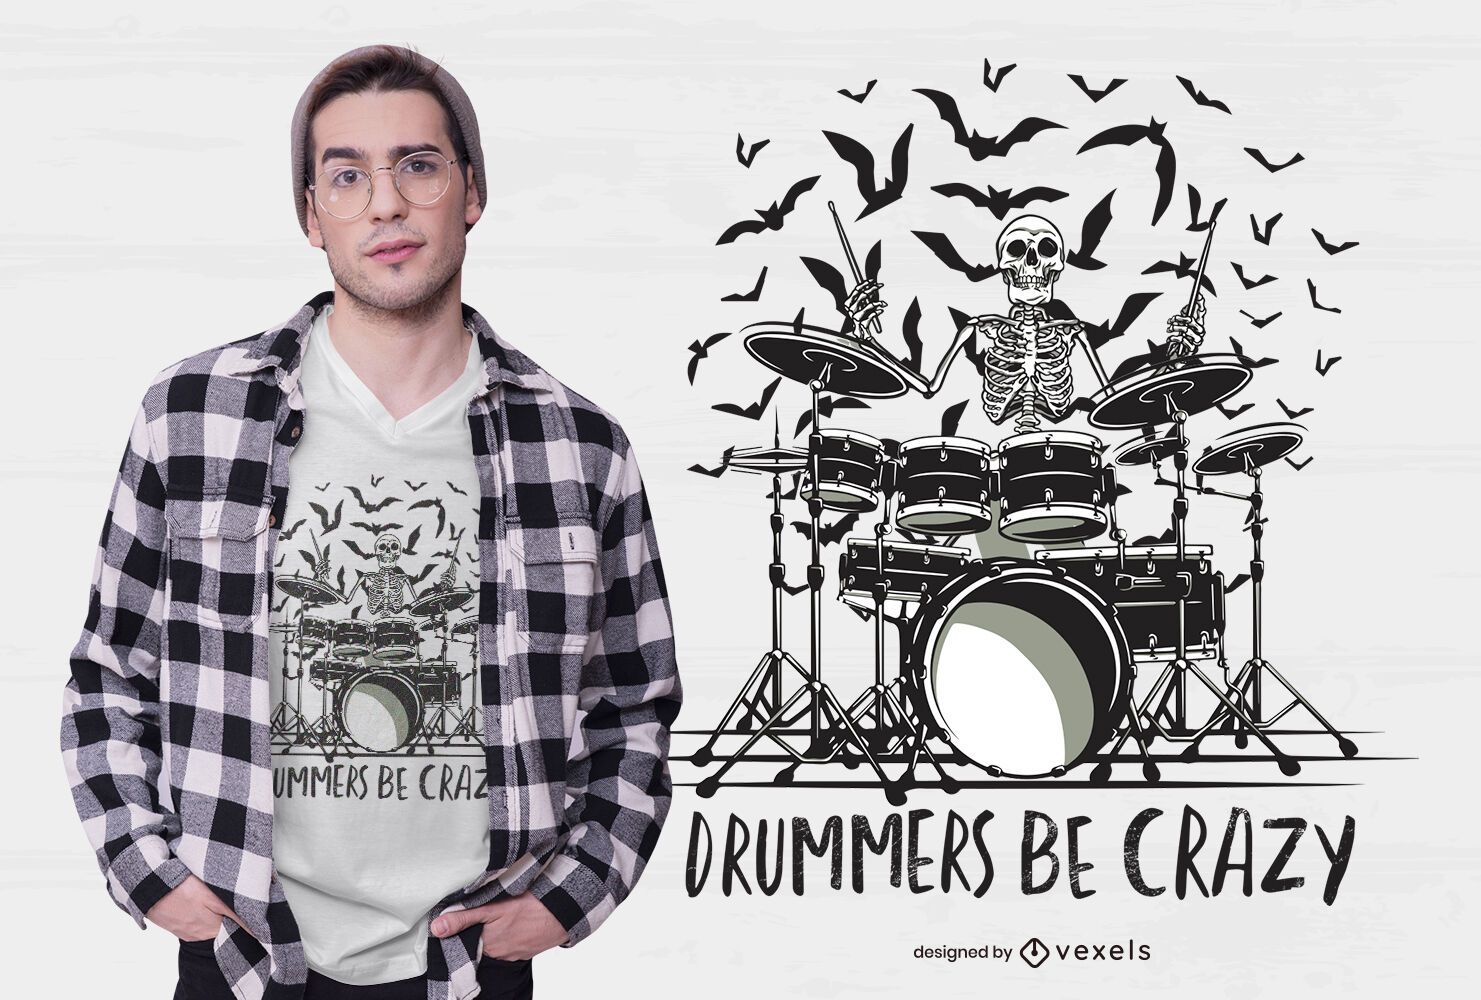 Los bateristas se vuelven locos con el dise?o de la camiseta.